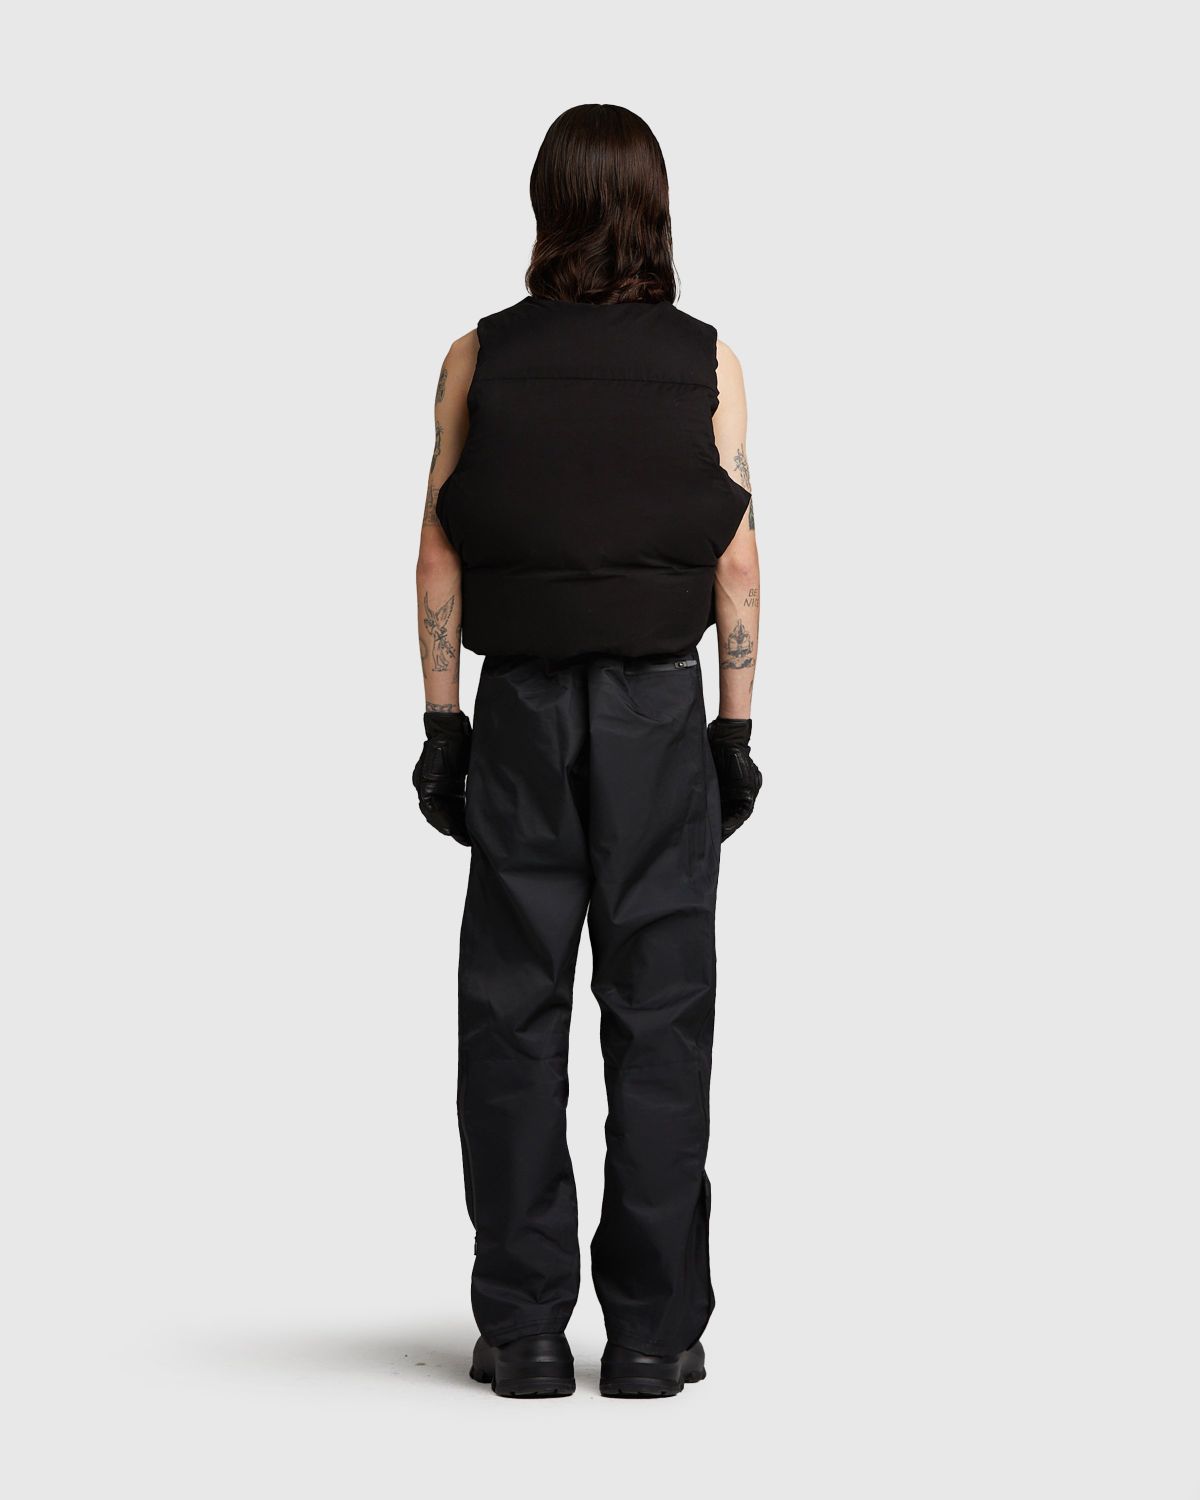 Entire Studios – Pillow Vest Soot - Vests - Black - Image 5